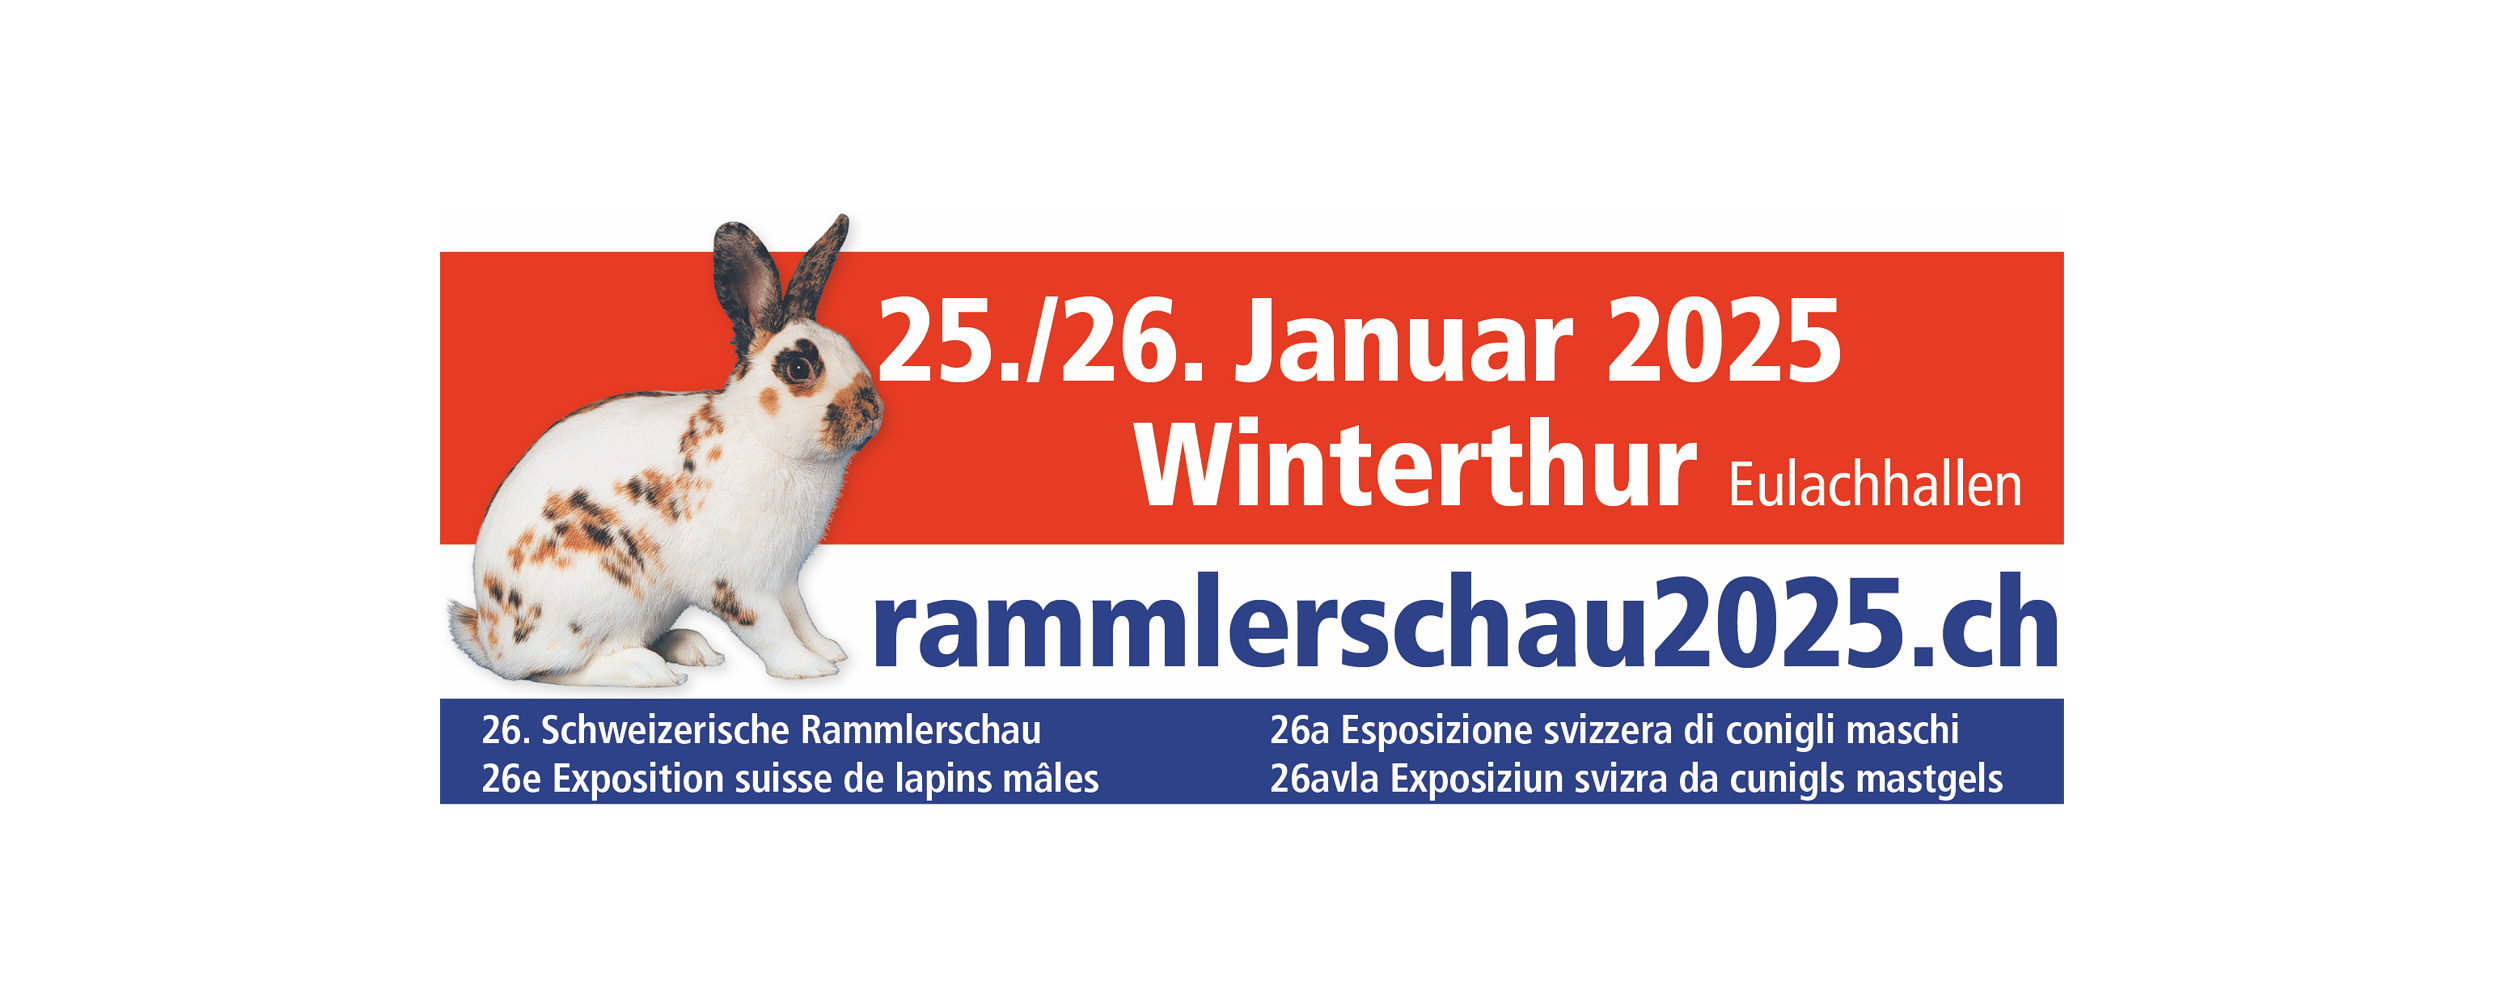 (c) Rammlerschau2025.ch